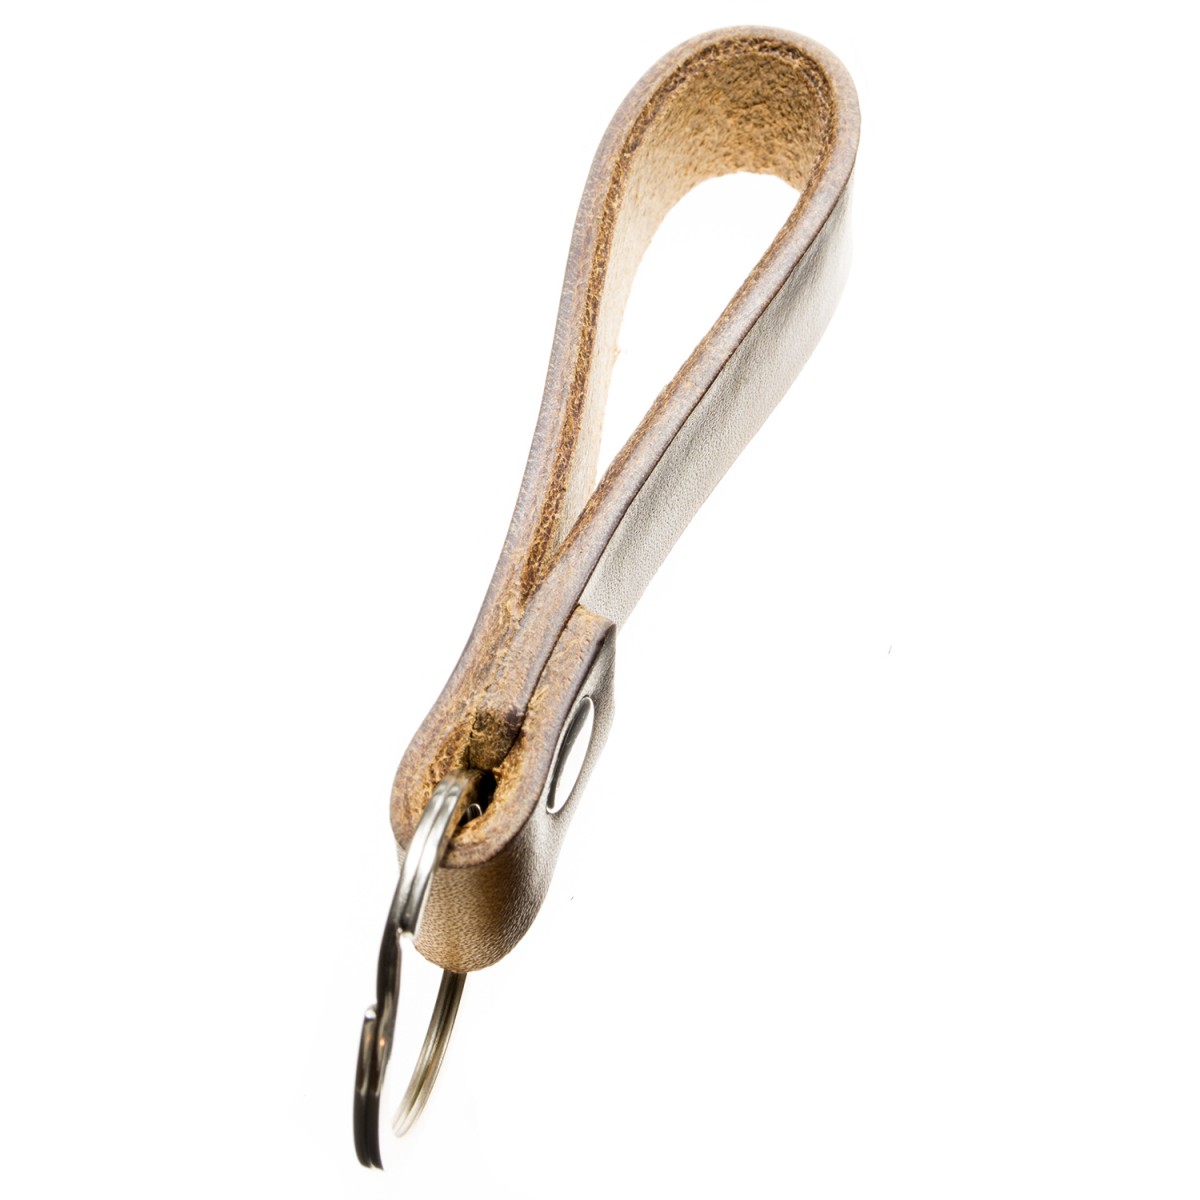 LIEBHARDT - Geschenk mit Herz Leder Schlüsselanhänger Leder zu Weihnachten für Frauen Männer in Gold eingeprägt